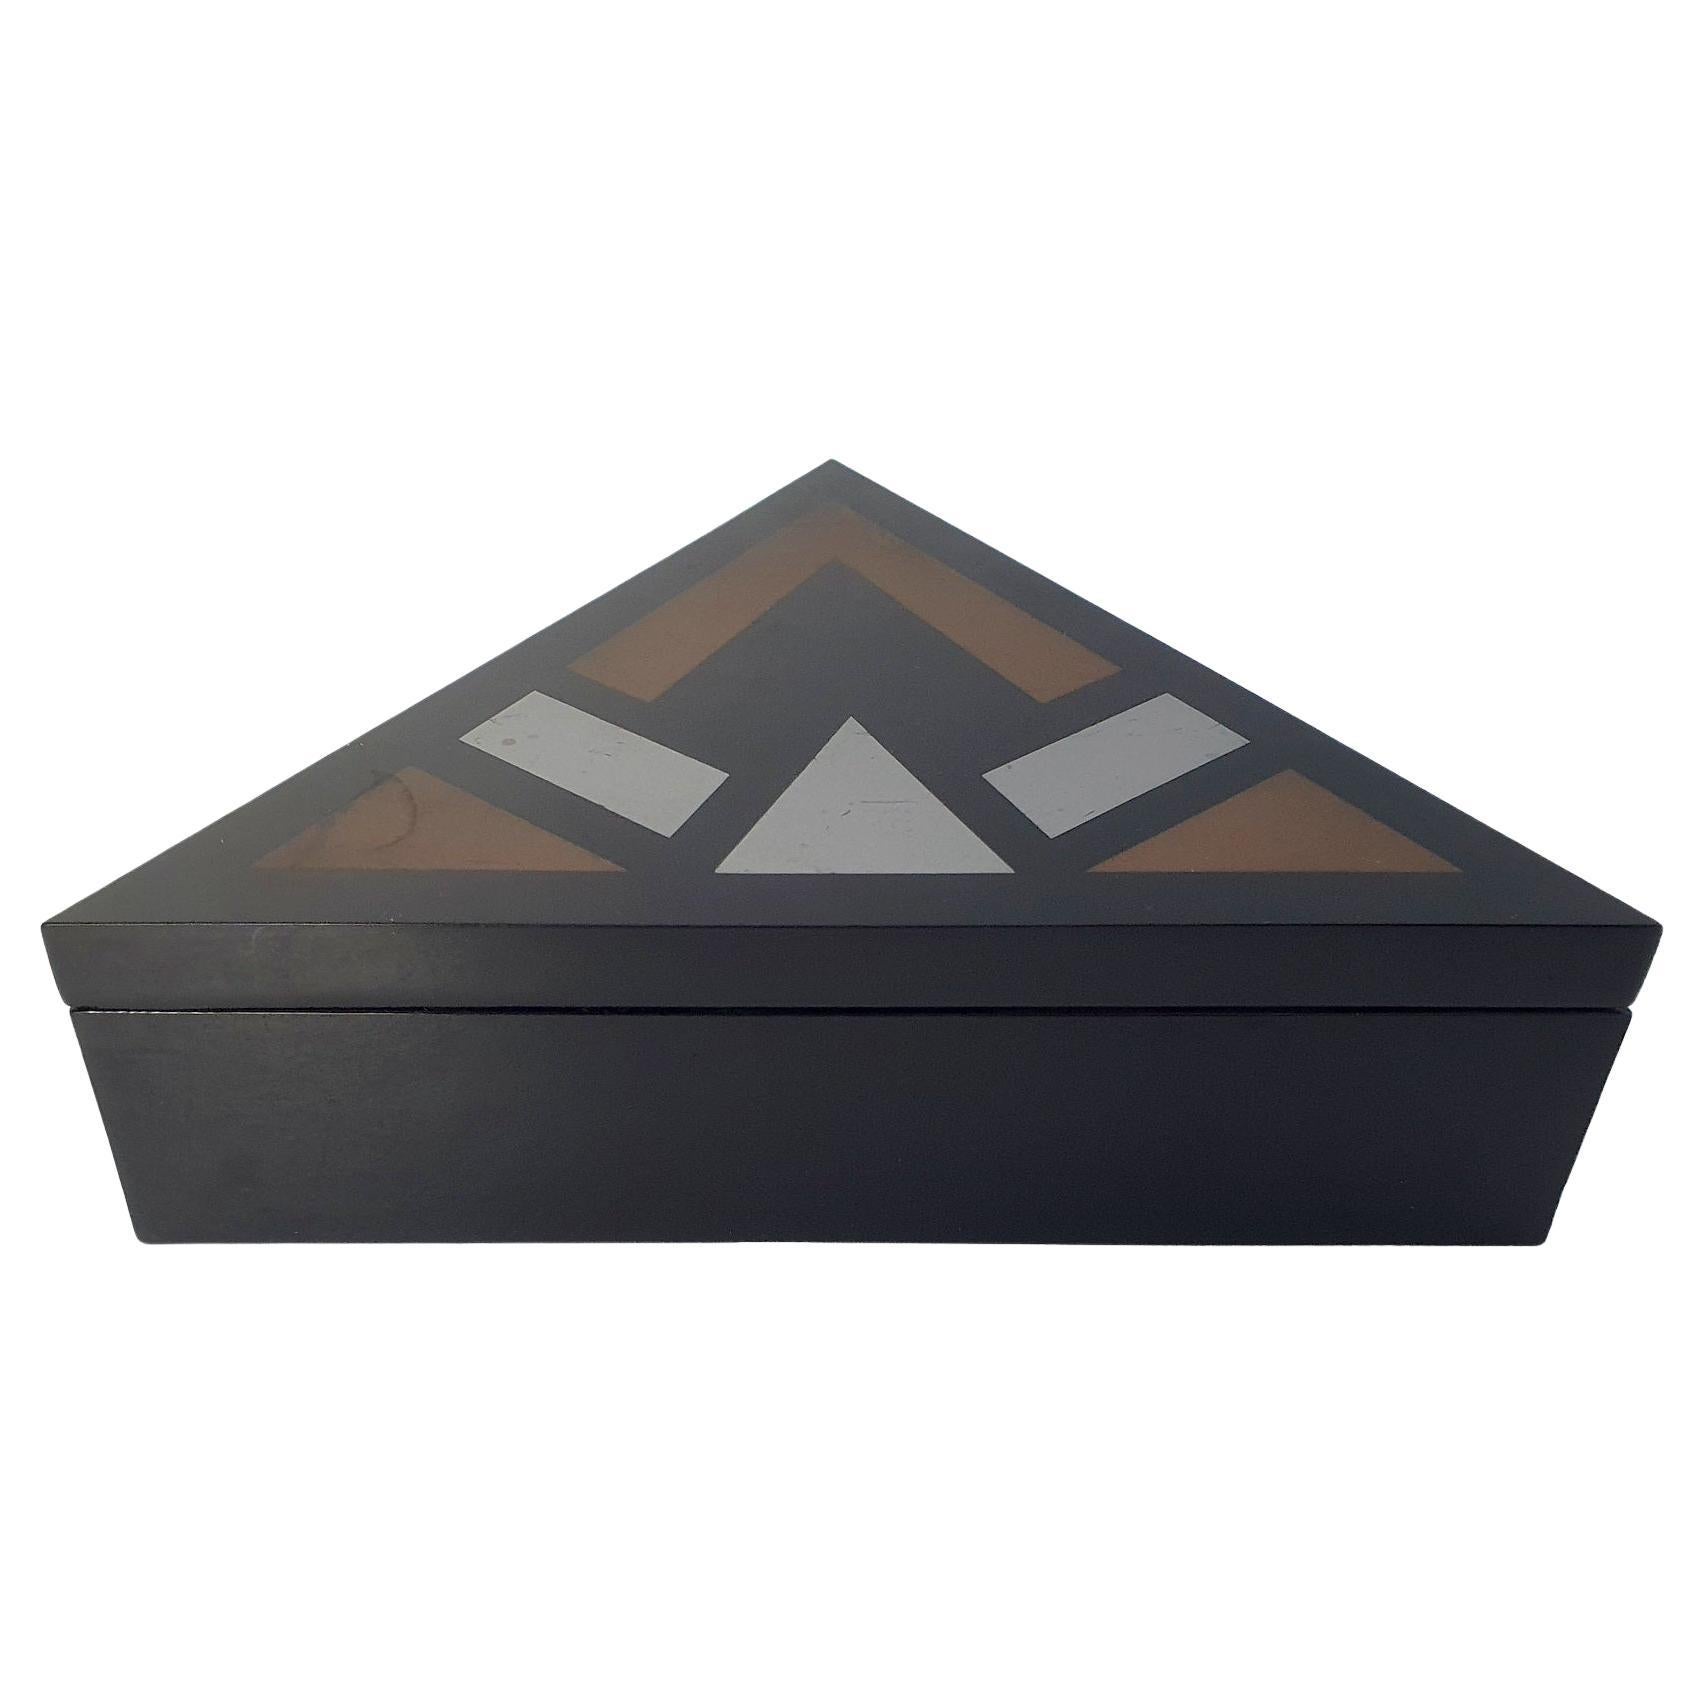 Hier haben wir eine einzigartige Schachtel im Art-Déco-Stil, die in den späten 1960er Jahren hergestellt wurde. Das MATERIAL ist schwarzes Luzit/Plexiglas mit goldenem Dekor. Darunter steht die Aufschrift Max Kahn. Der Stil erinnert an das